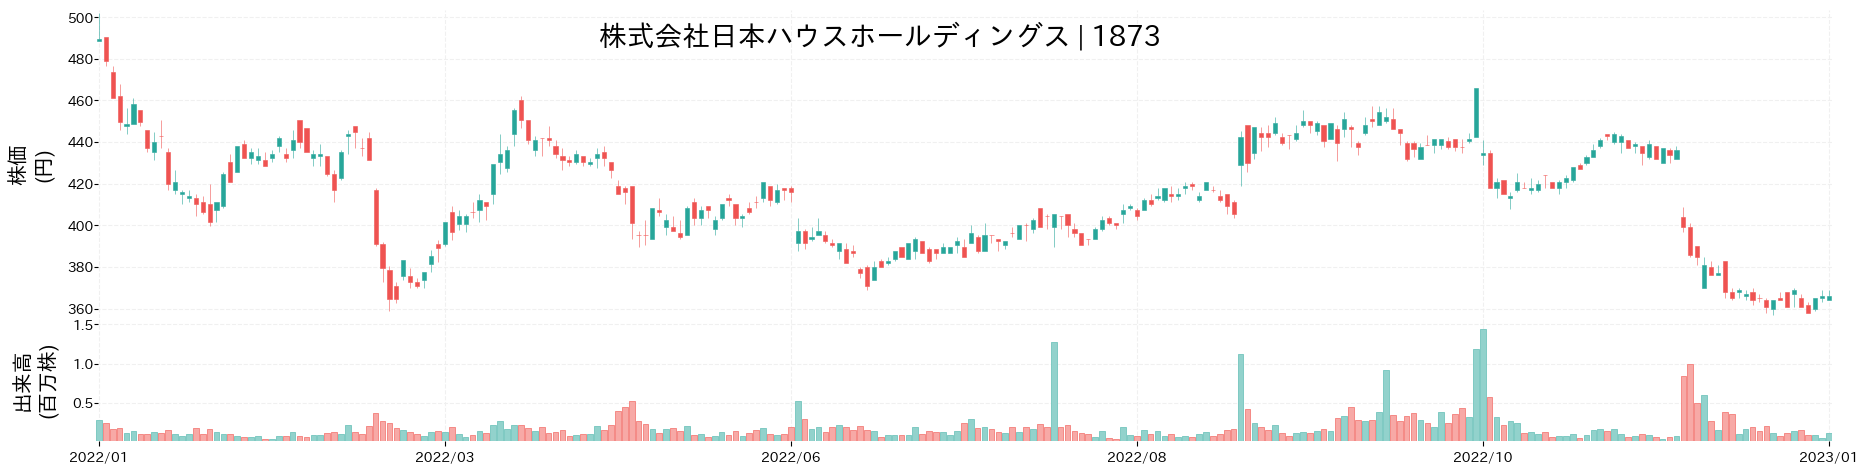 日本ハウスホールディングスの株価推移(2022)